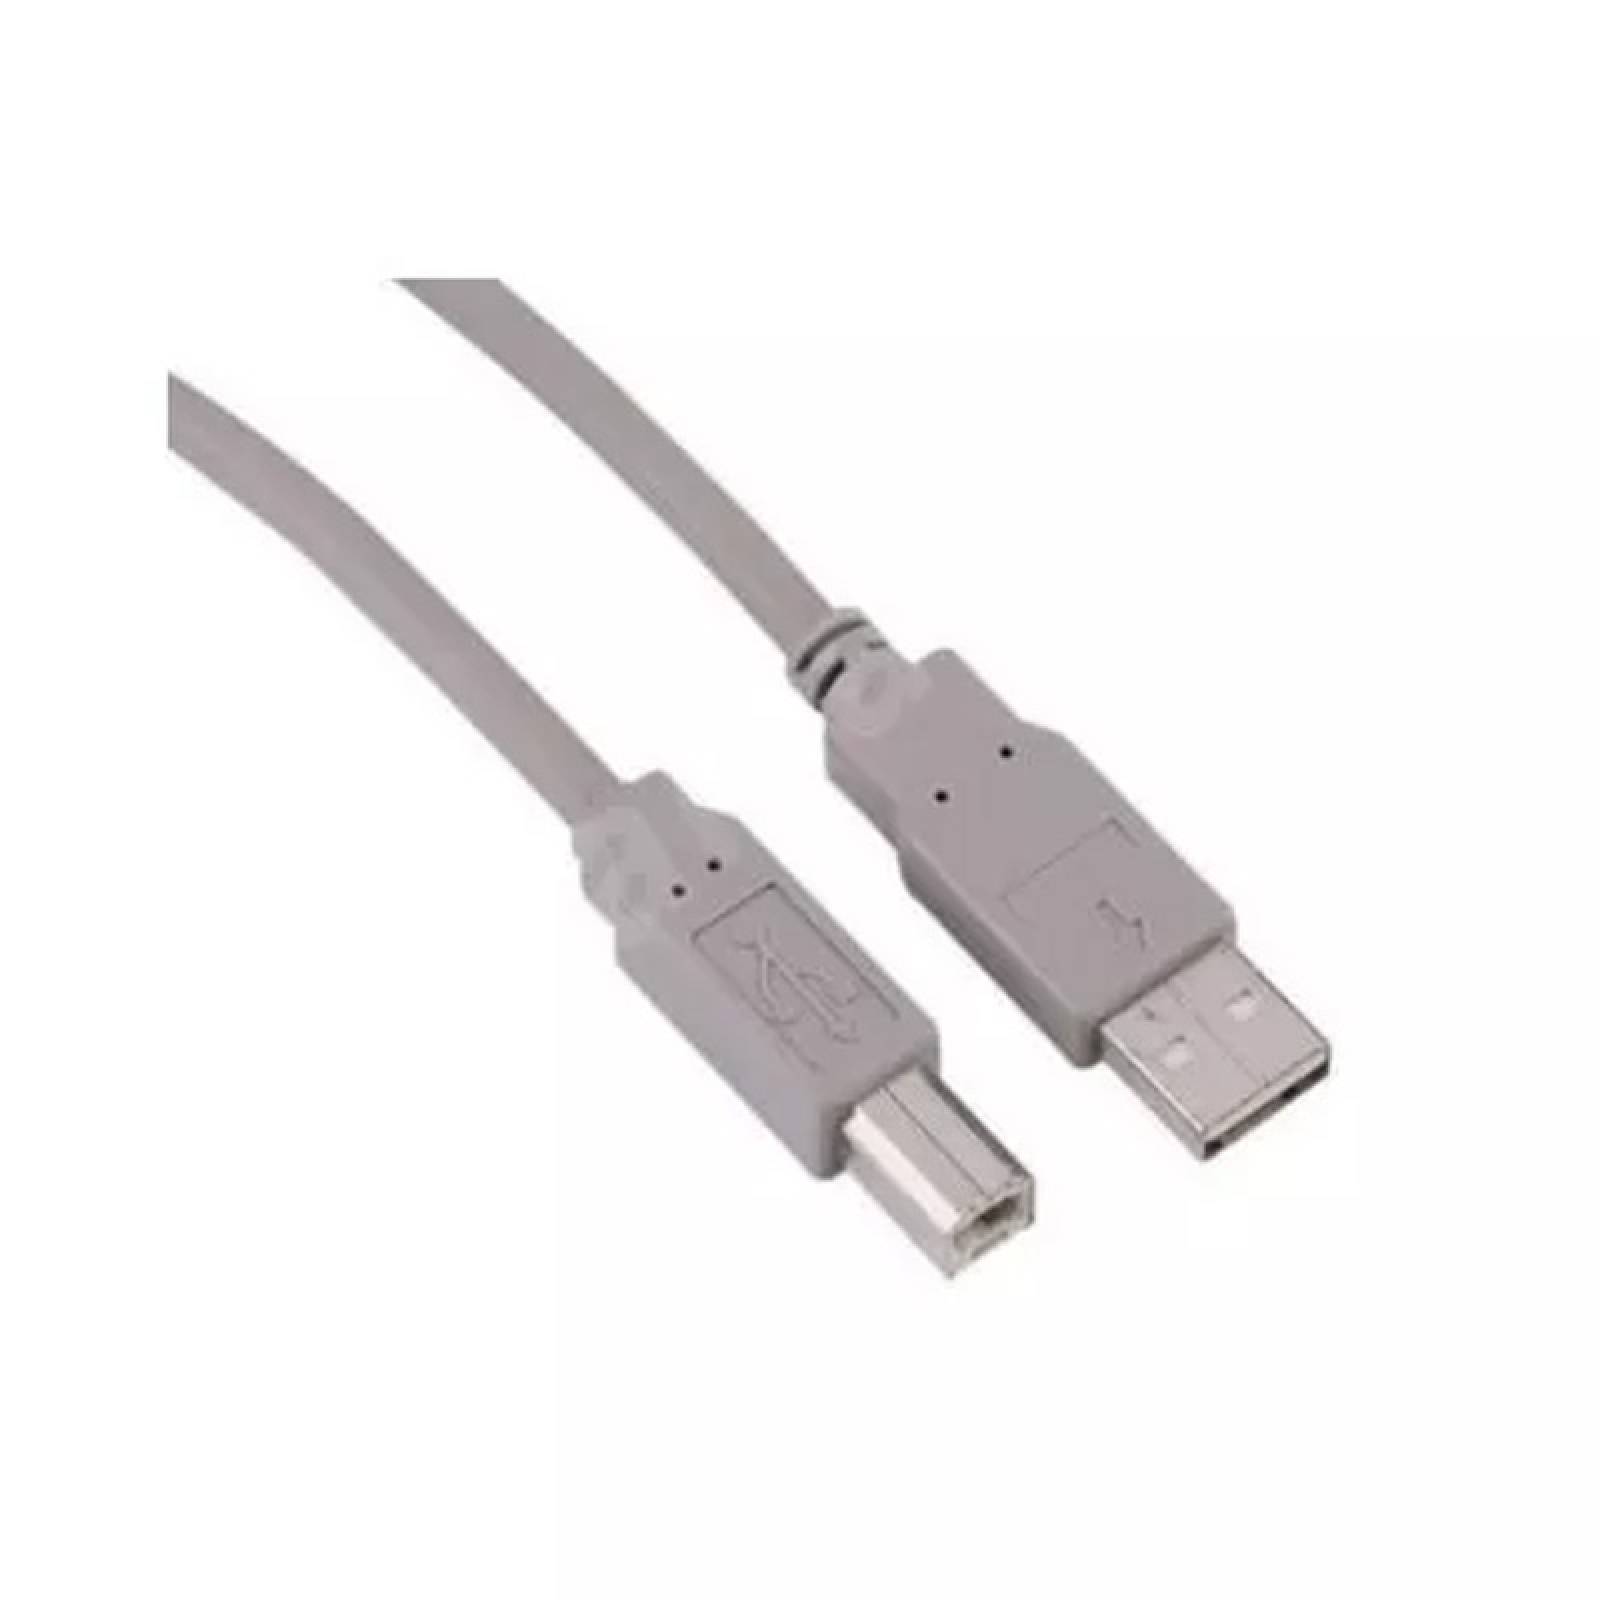 CABLE USB A-B MANHATTAN 771023, 1.8 METROS